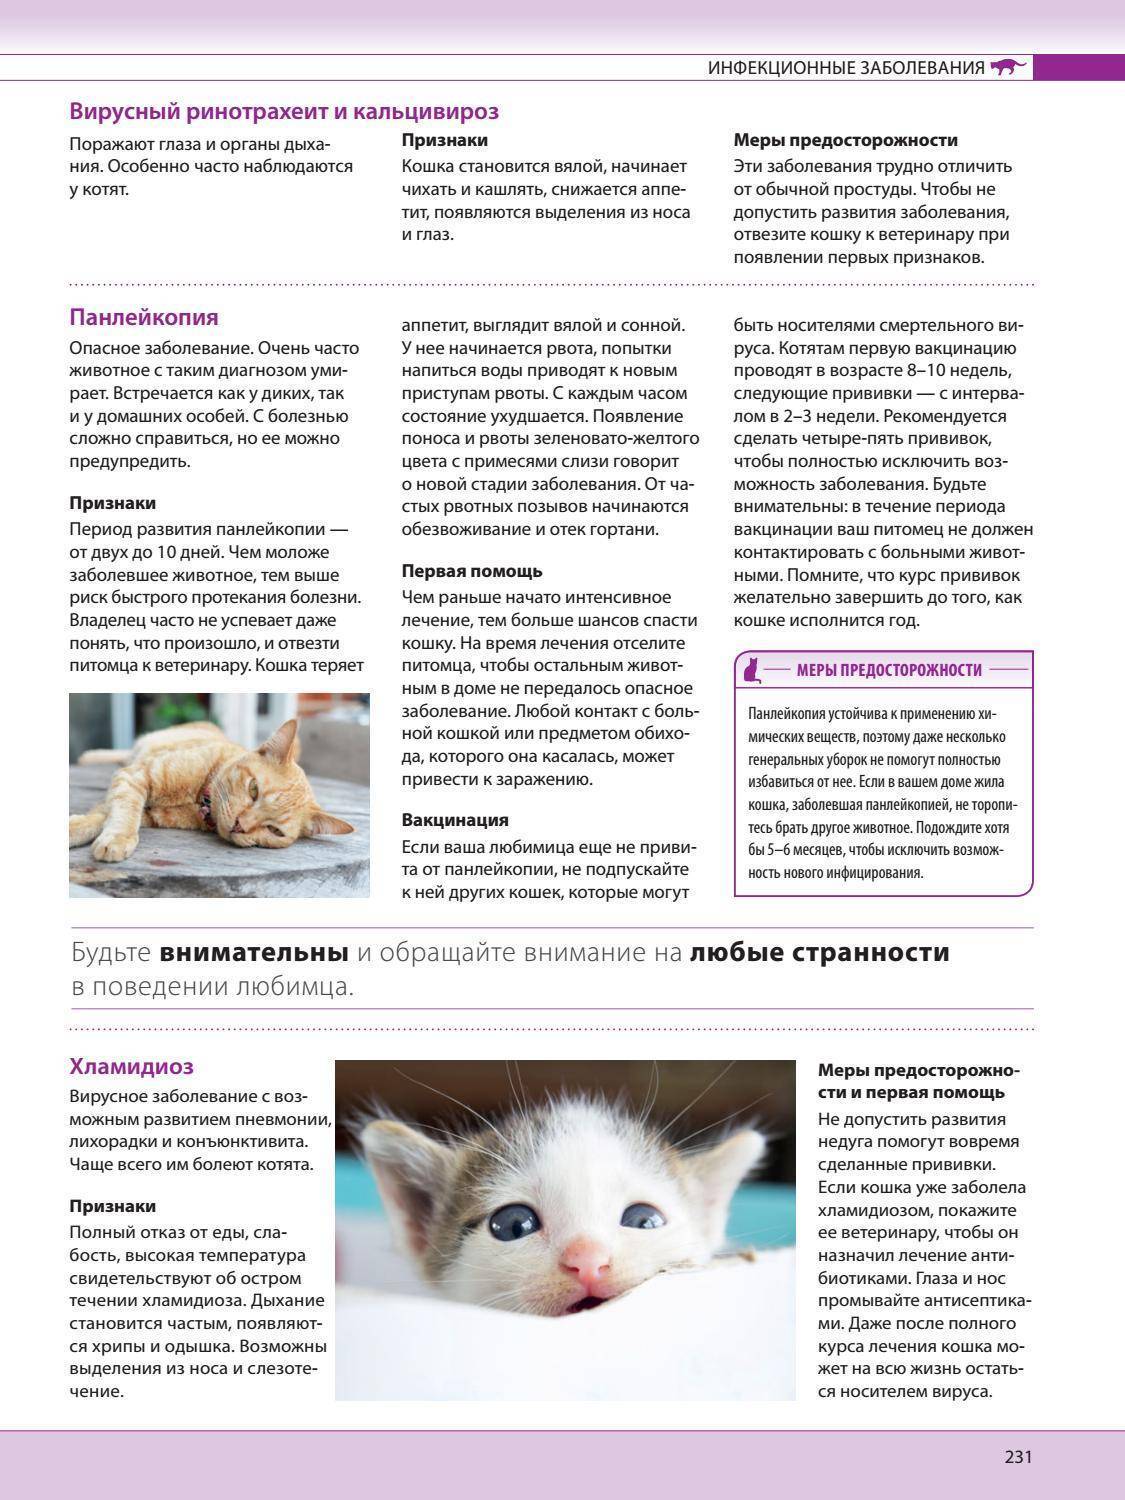 Микоплазмоз у кошки симптомы и лечение